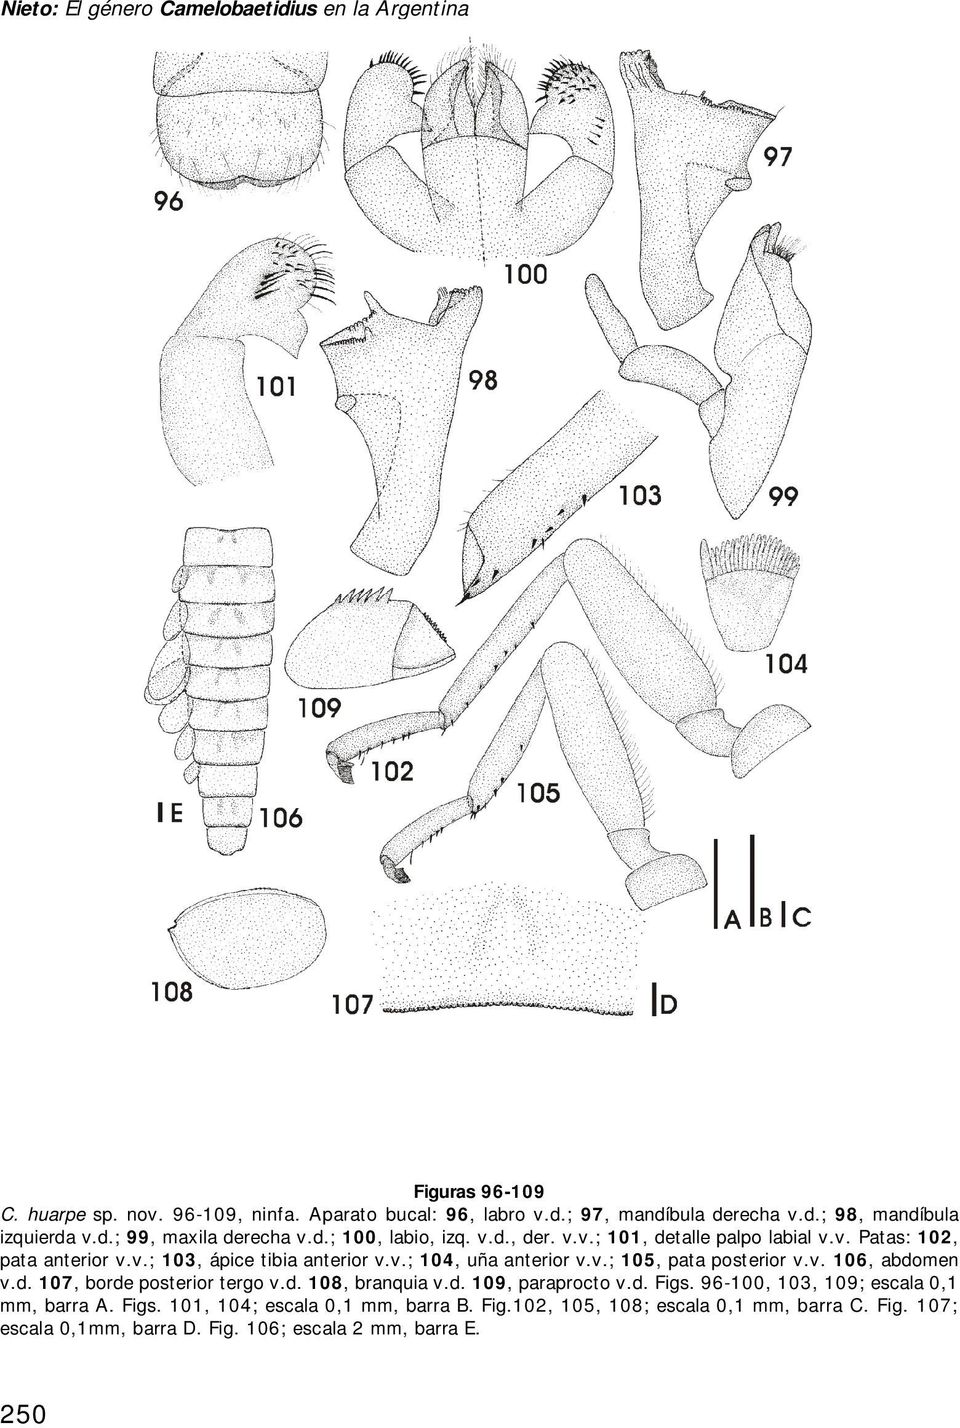 v.; 105, pata posterior v.v. 106, abdomen v.d. 107, borde posterior tergo v.d. 108, branquia v.d. 109, paraprocto v.d. Figs. 96-100, 103, 109; escala 0,1 mm, barra A.